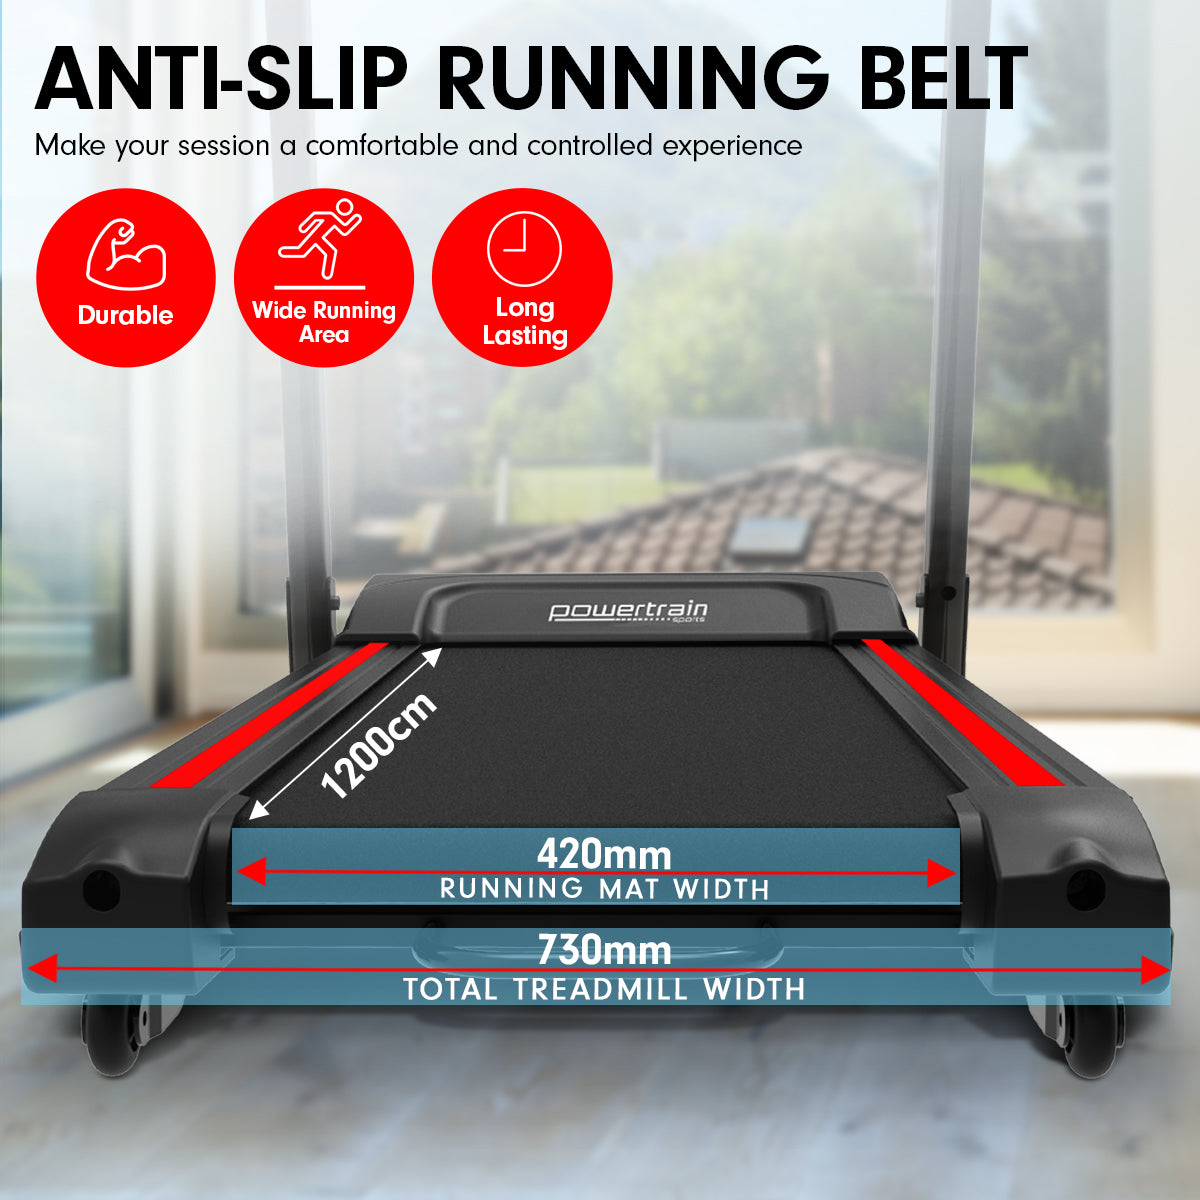 Powertrain K2000 Treadmill w/ Fan & Auto Incline Speed 22km/h